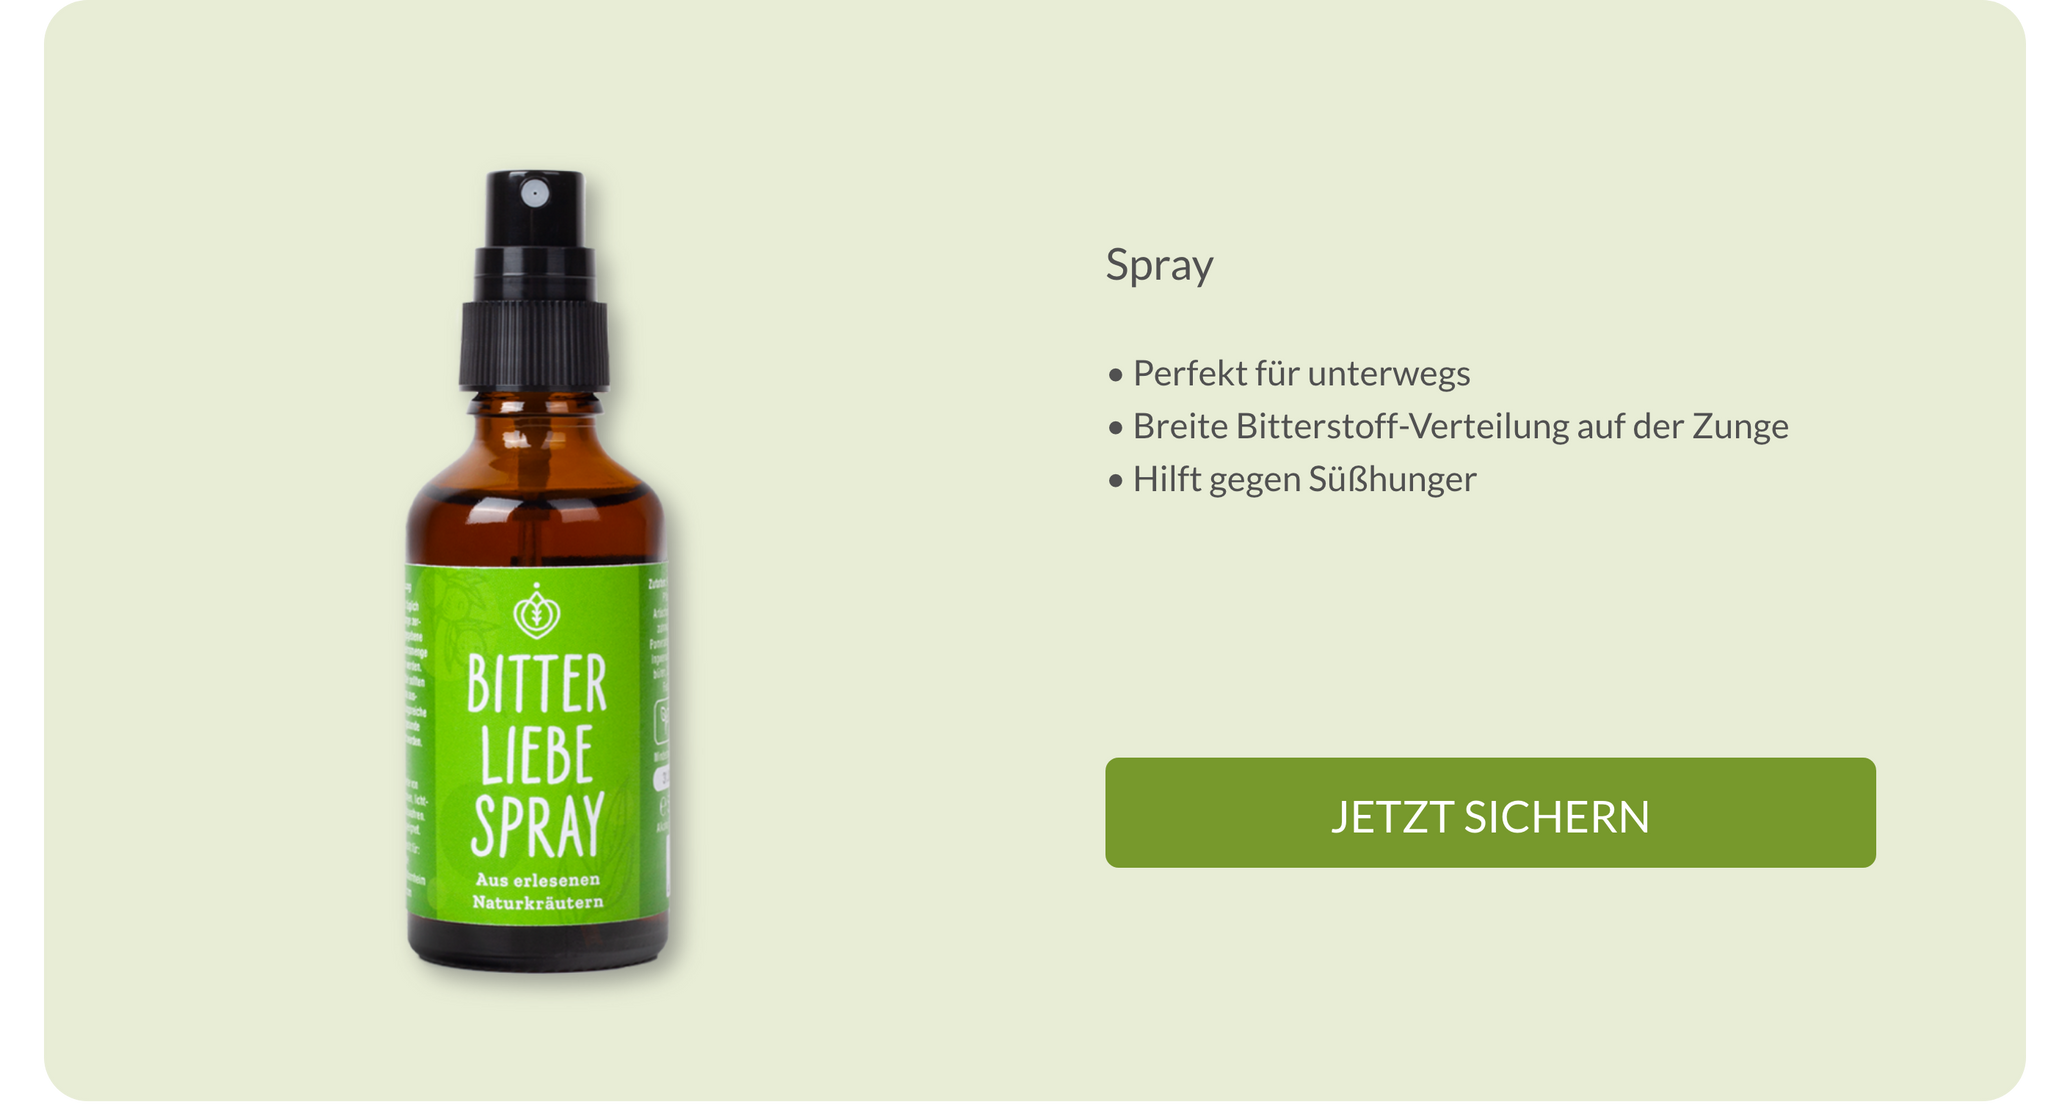 BitterLiebe Spray